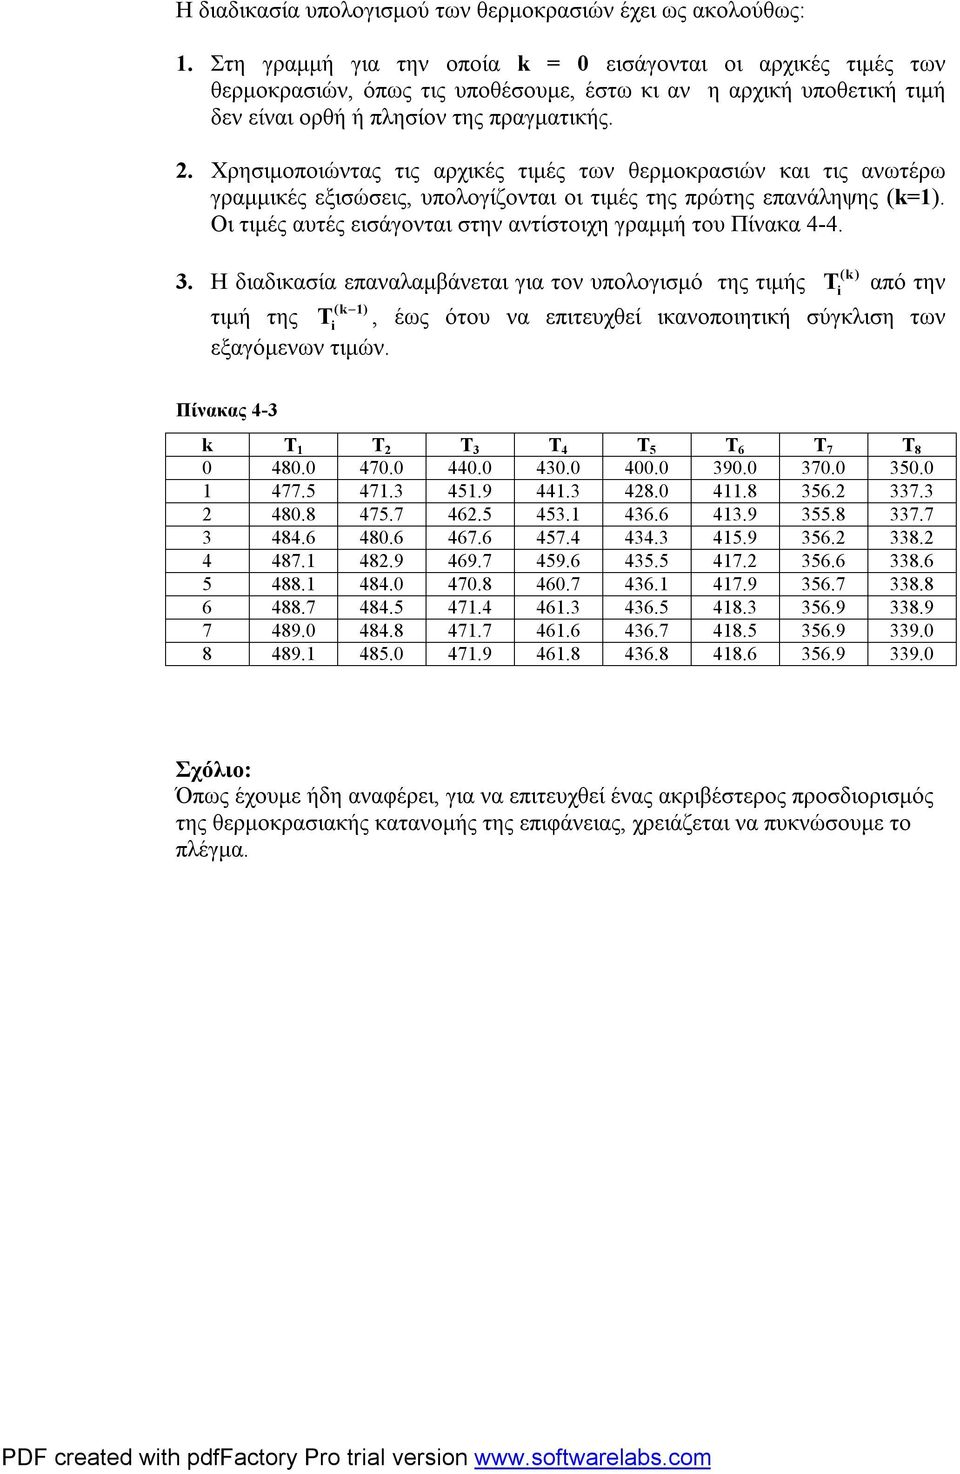 αντίστοιχη γραμμή του Πίνακα (k) Η διαδικασία επαναλαμβάνεται για τον υπολογισμό της τιμής i από την τιμή της i, έως ότου να επιτευχθεί ικανοποιητική σύγκλιση των εξαγόμενων τιμών Πίνακας k 5 6 7 8 8